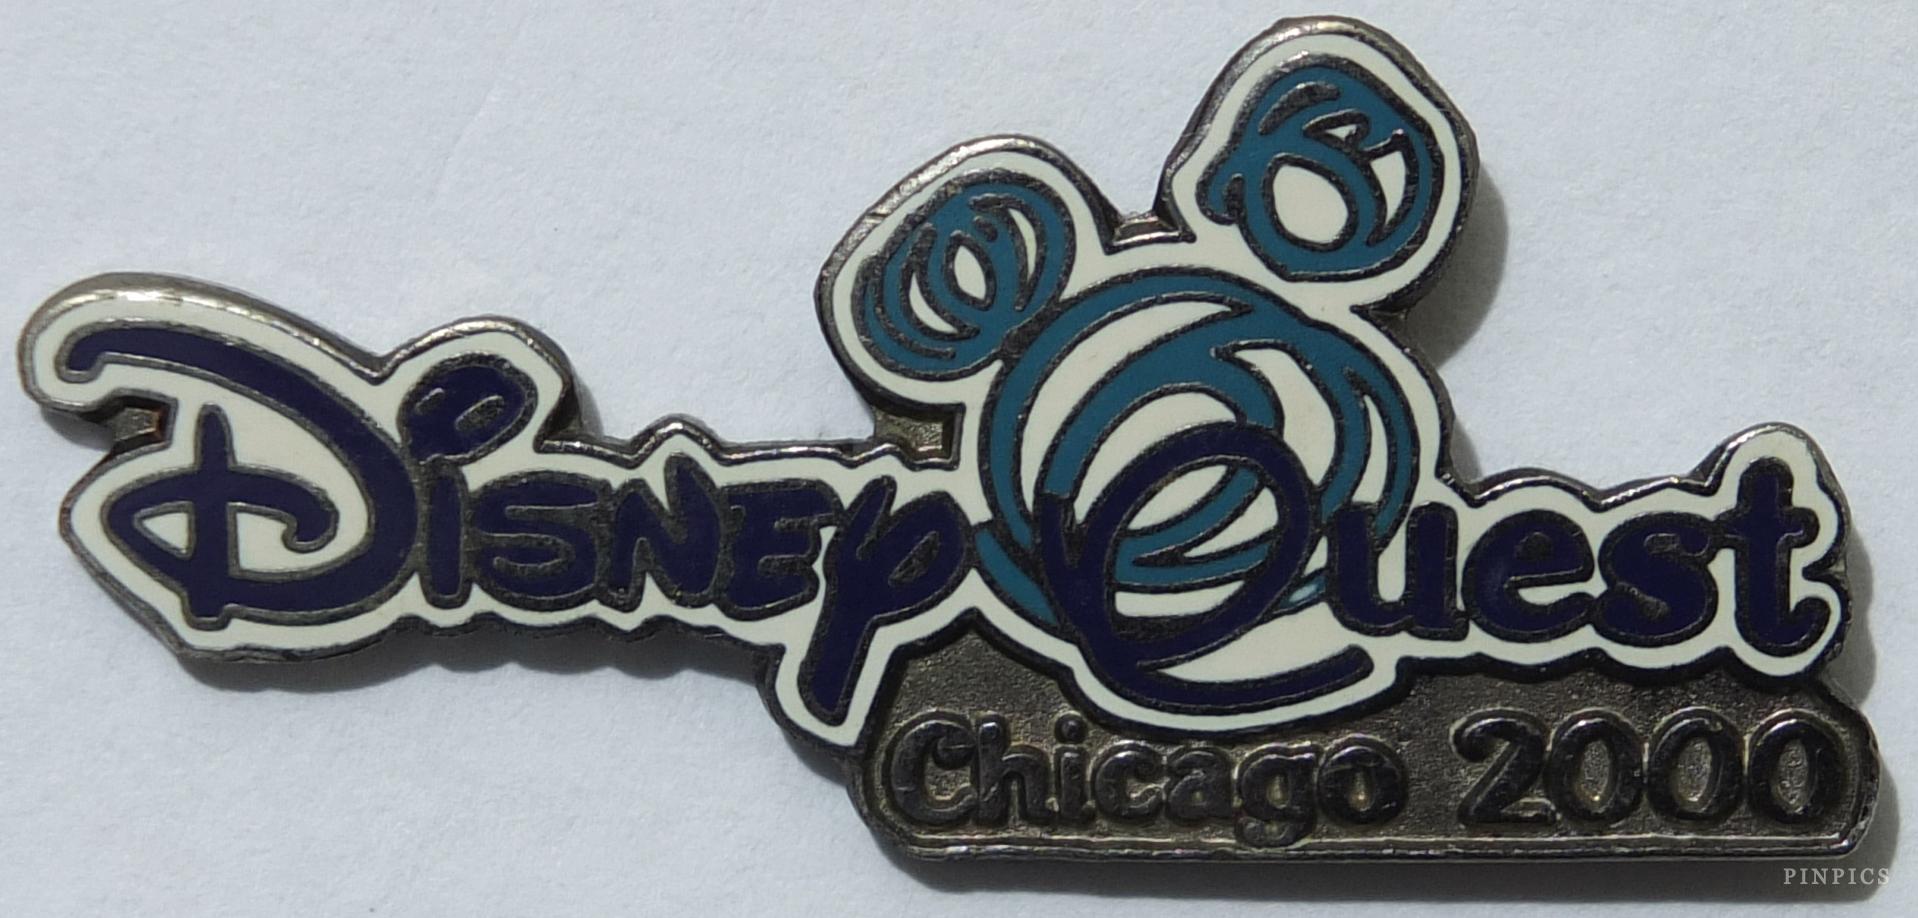 DisneyQuest 2000 - Chicago (black version)